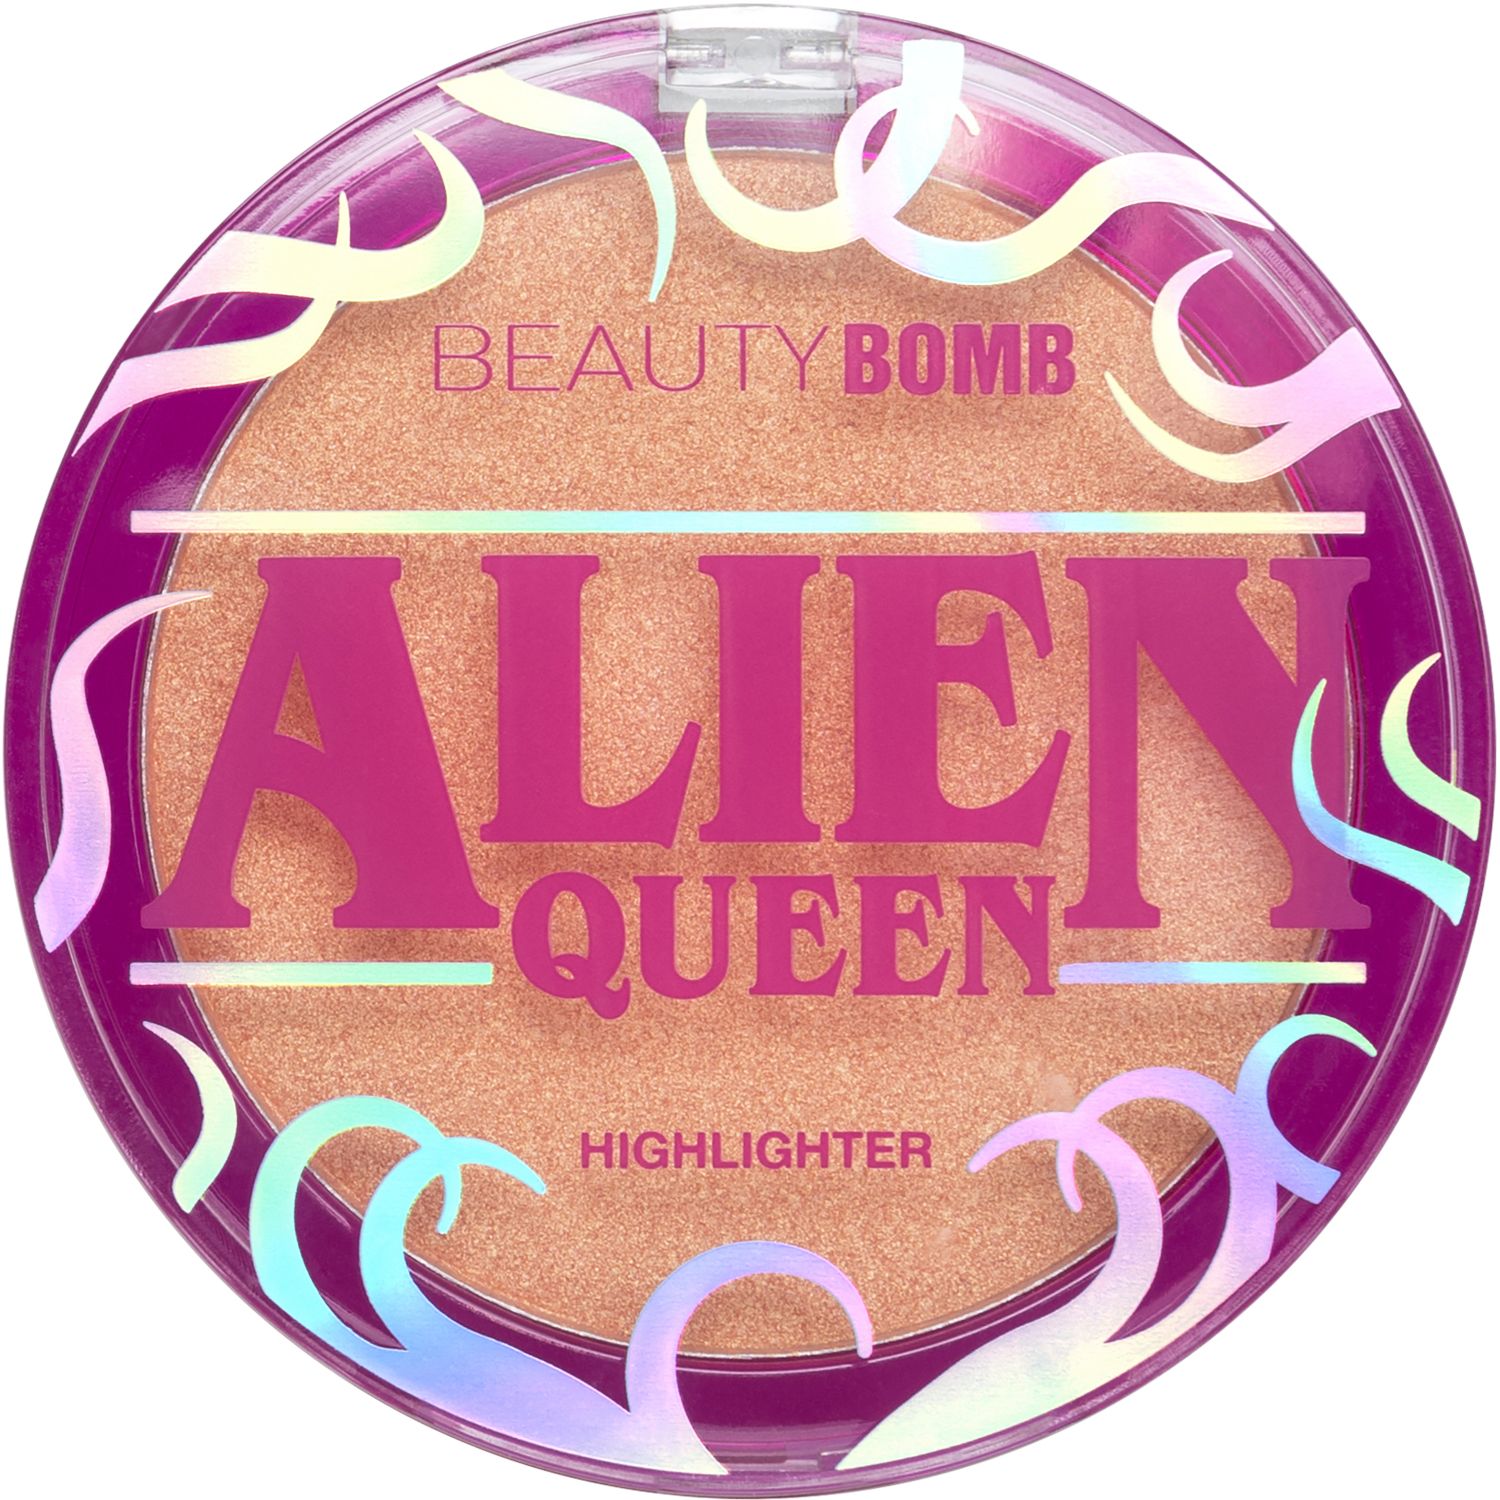 Хайлайтер Beauty Bomb Alien Queen  с золотистым сиянием, персиковый, №01, 6 г beauty fox соль для ванны персиковый взрыв 350